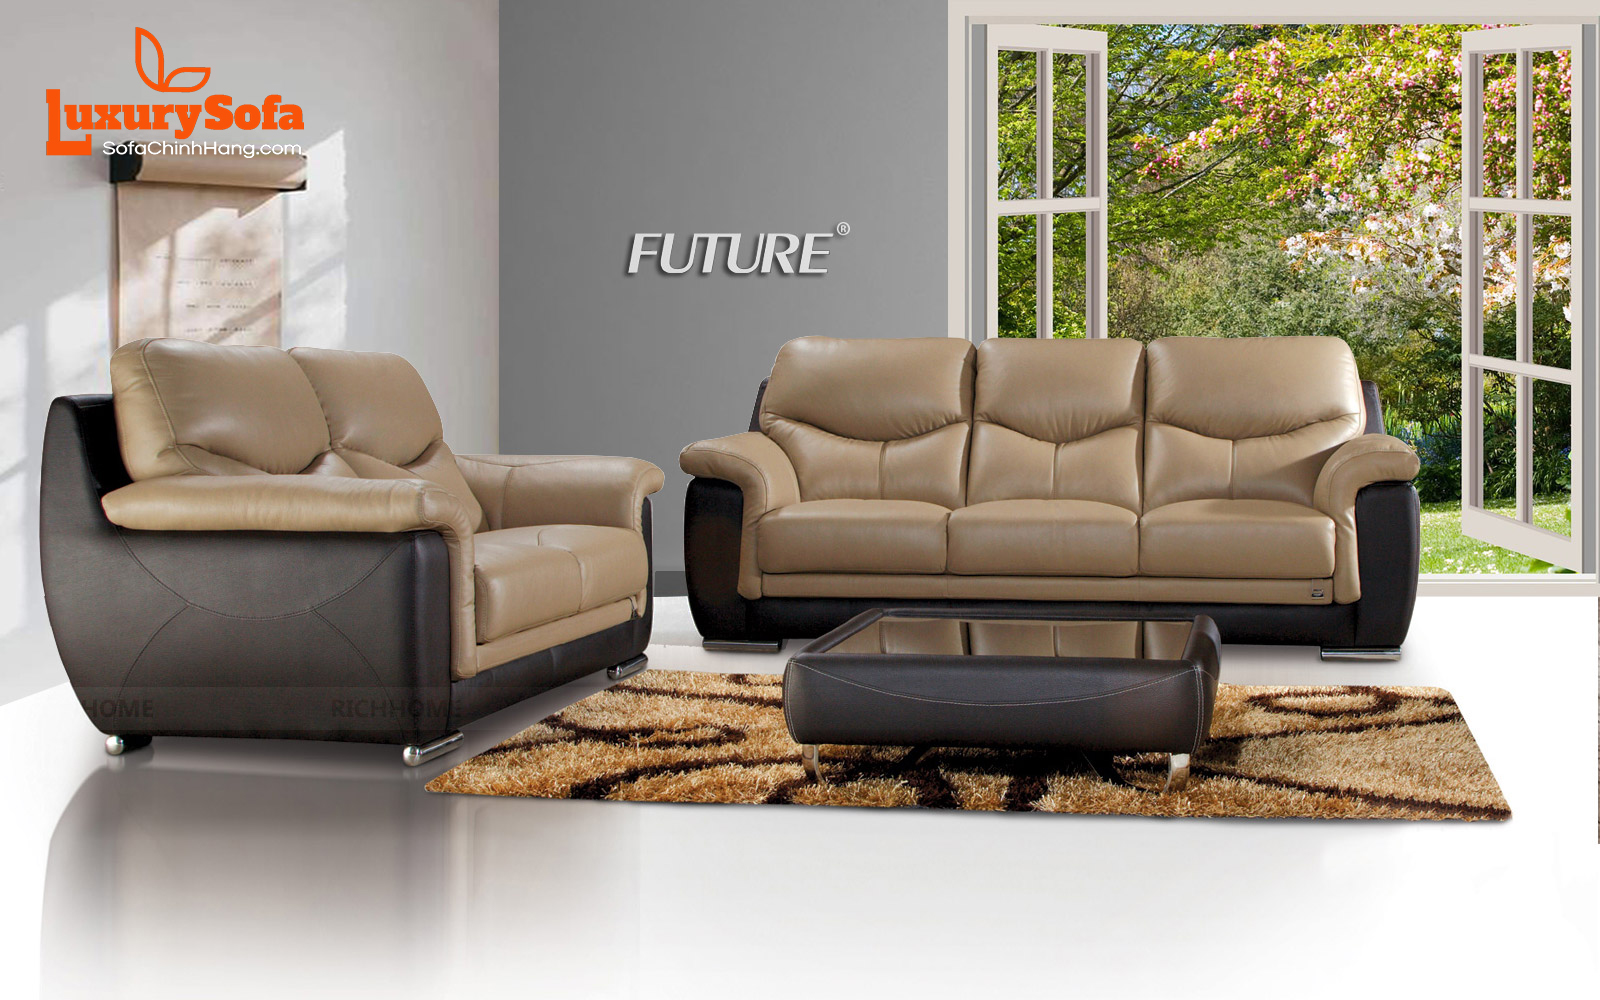 Mua bàn ghế sofa phòng khách dưới 5 triệu: Phòng khách là không gian để bạn thể hiện phong cách và khẳng định cá tính của mình. Với mức giá dưới 5 triệu đồng, chúng tôi sẽ đáp ứng nhu cầu của bạn với bàn ghế sofa phòng khách đa dạng về màu sắc, chất liệu và kiểu dáng. Hãy đến với cửa hàng của chúng tôi để mua các sản phẩm tuyệt vời nhất cho không gian phòng khách của bạn.